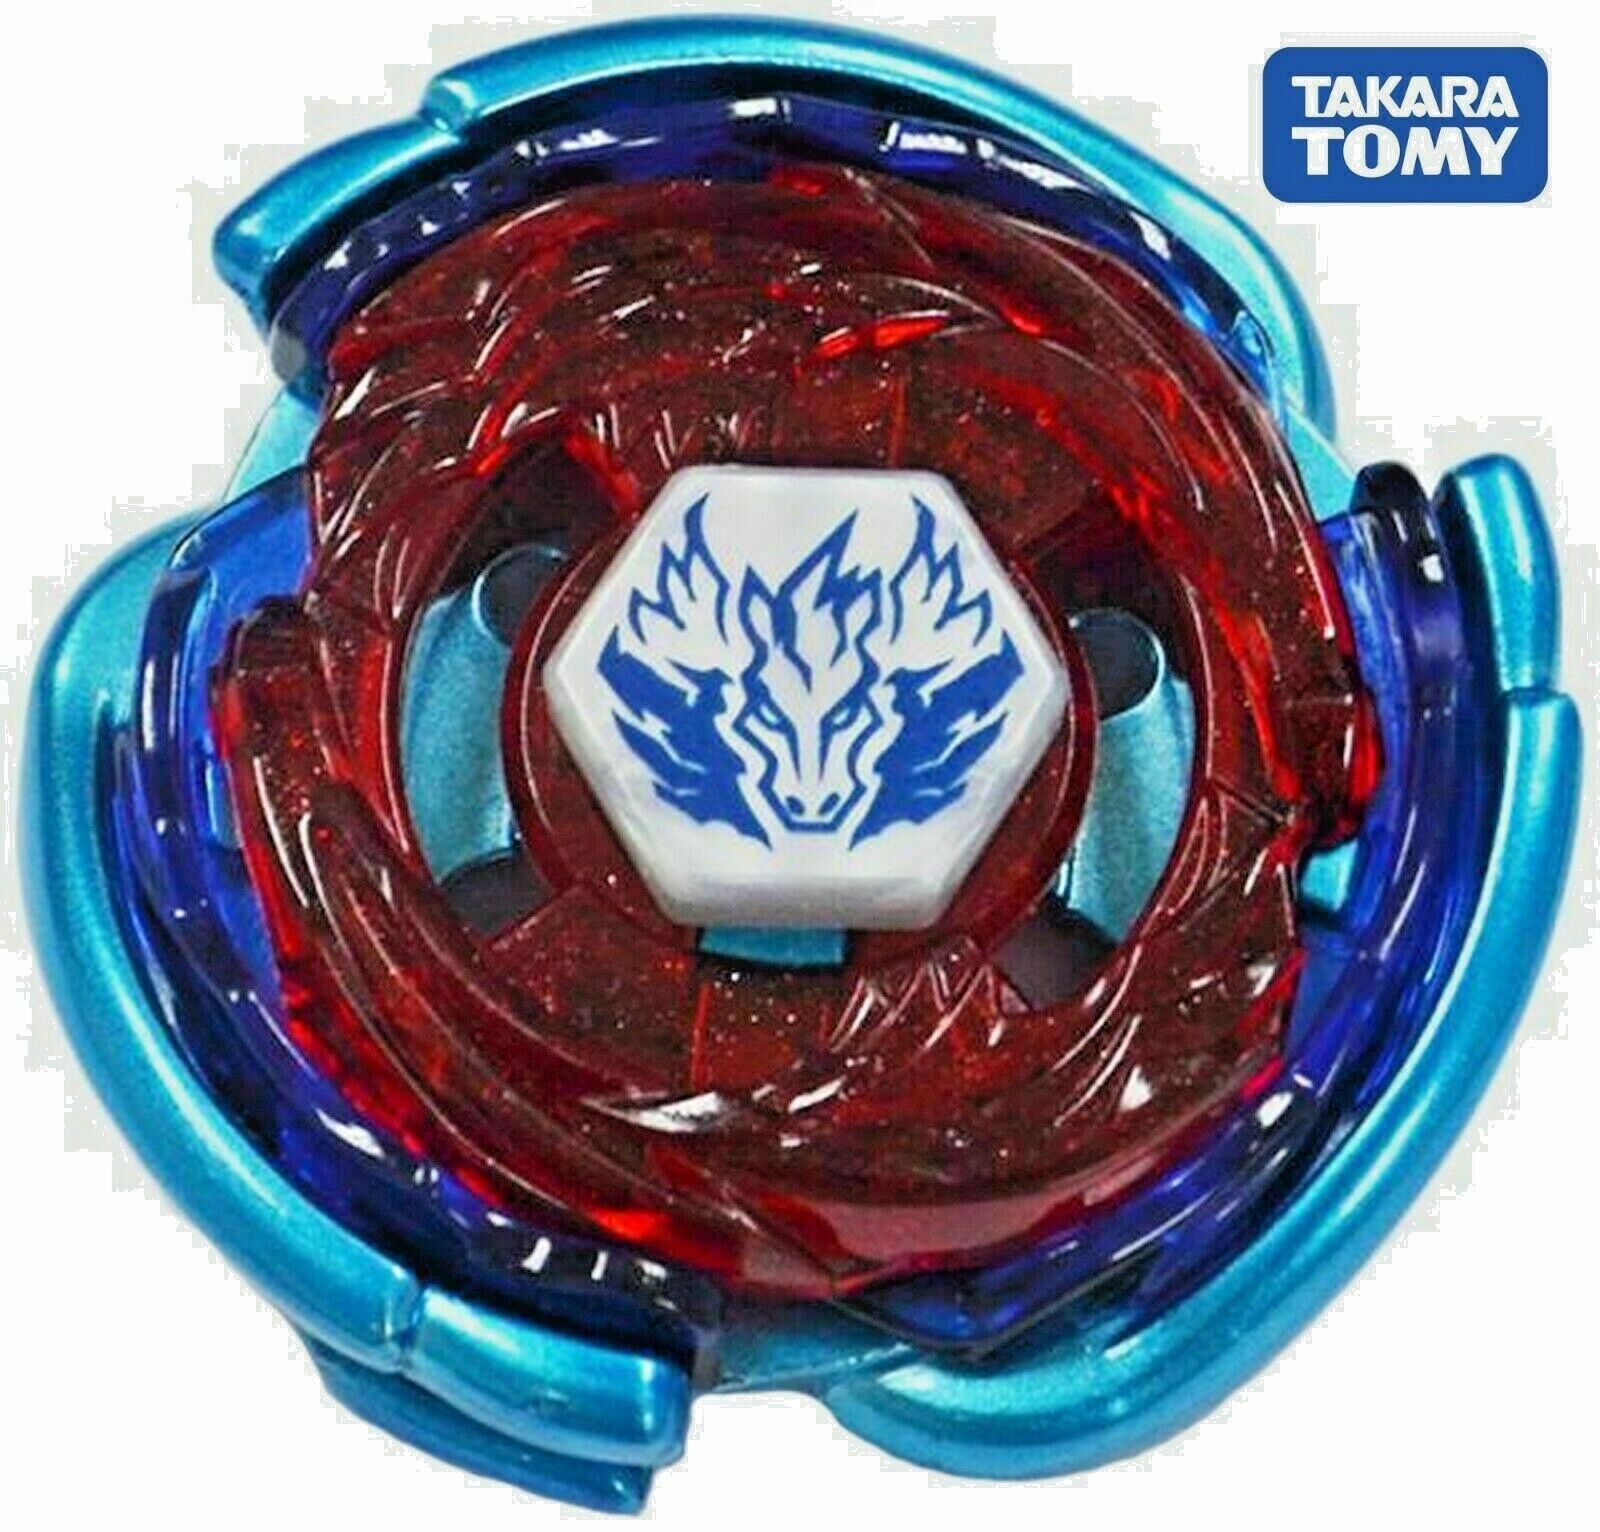 TAKARA TOMY Big Bang Cosmic Pegasus BLUE WING Pegasis Beyblade 125SF USA Seller